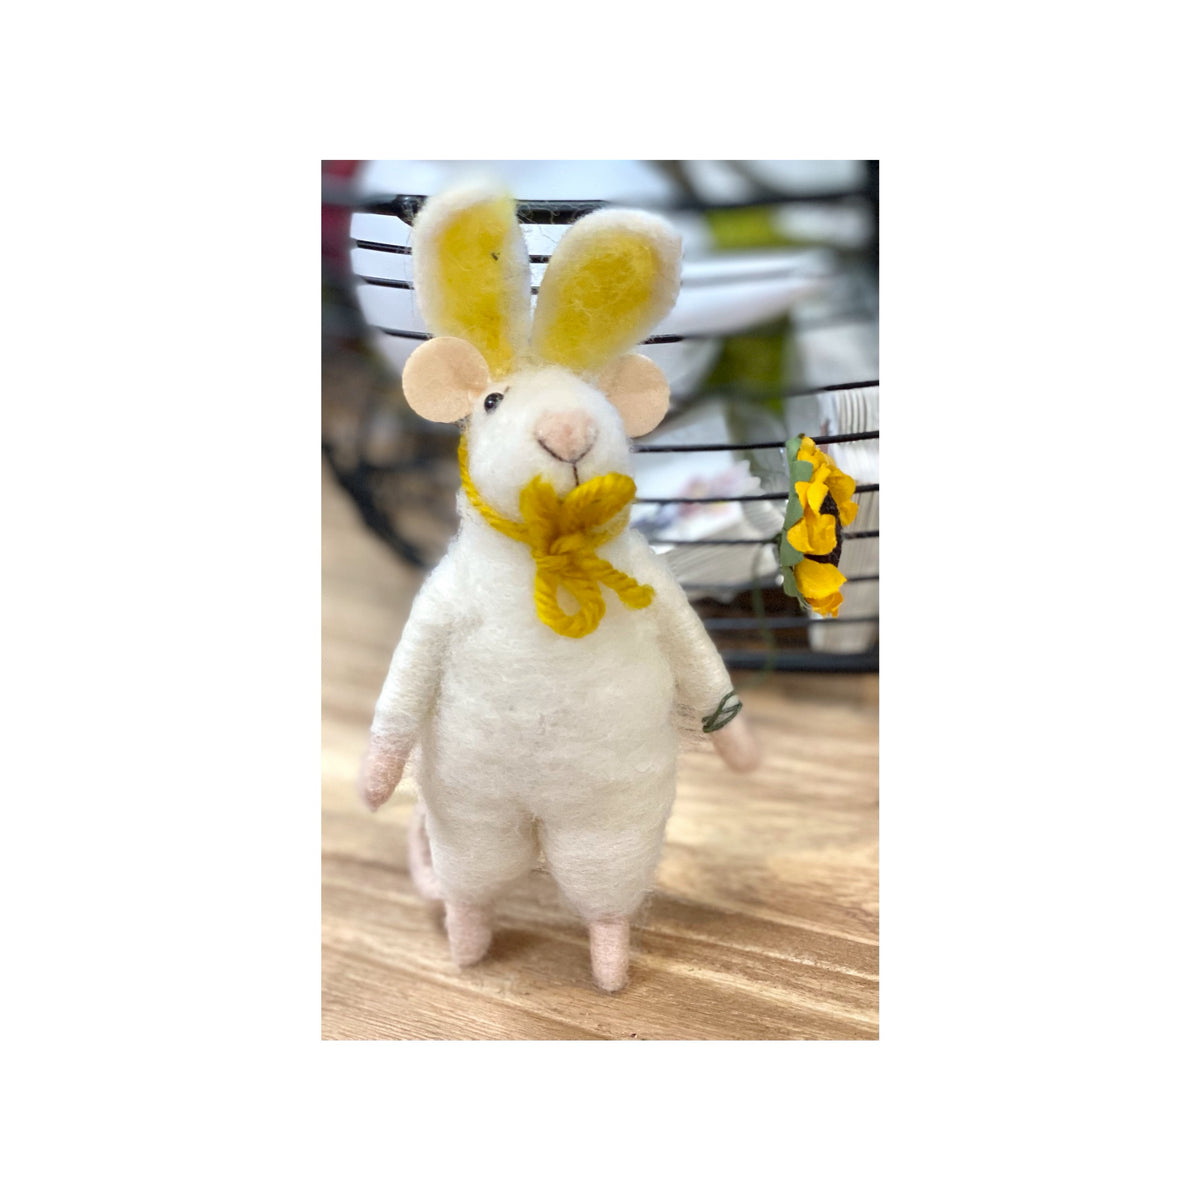 Felt Mouse With Bunny Ears Holding A Sunflower